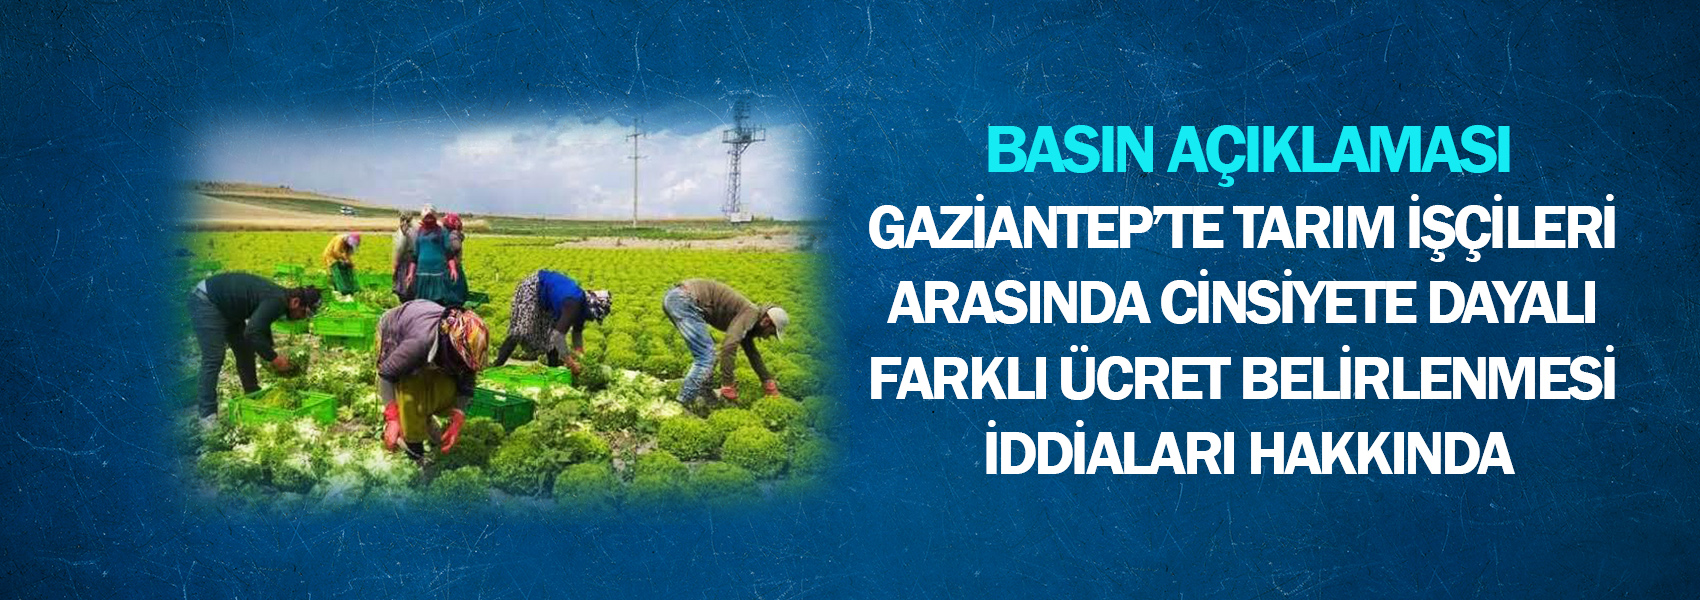 Gaziantep’te Tarım İşçileri Arasında Cinsiyete Dayalı Farklı Ücret Belirlenmesi İddiaları Hakkında Basın Açıklaması